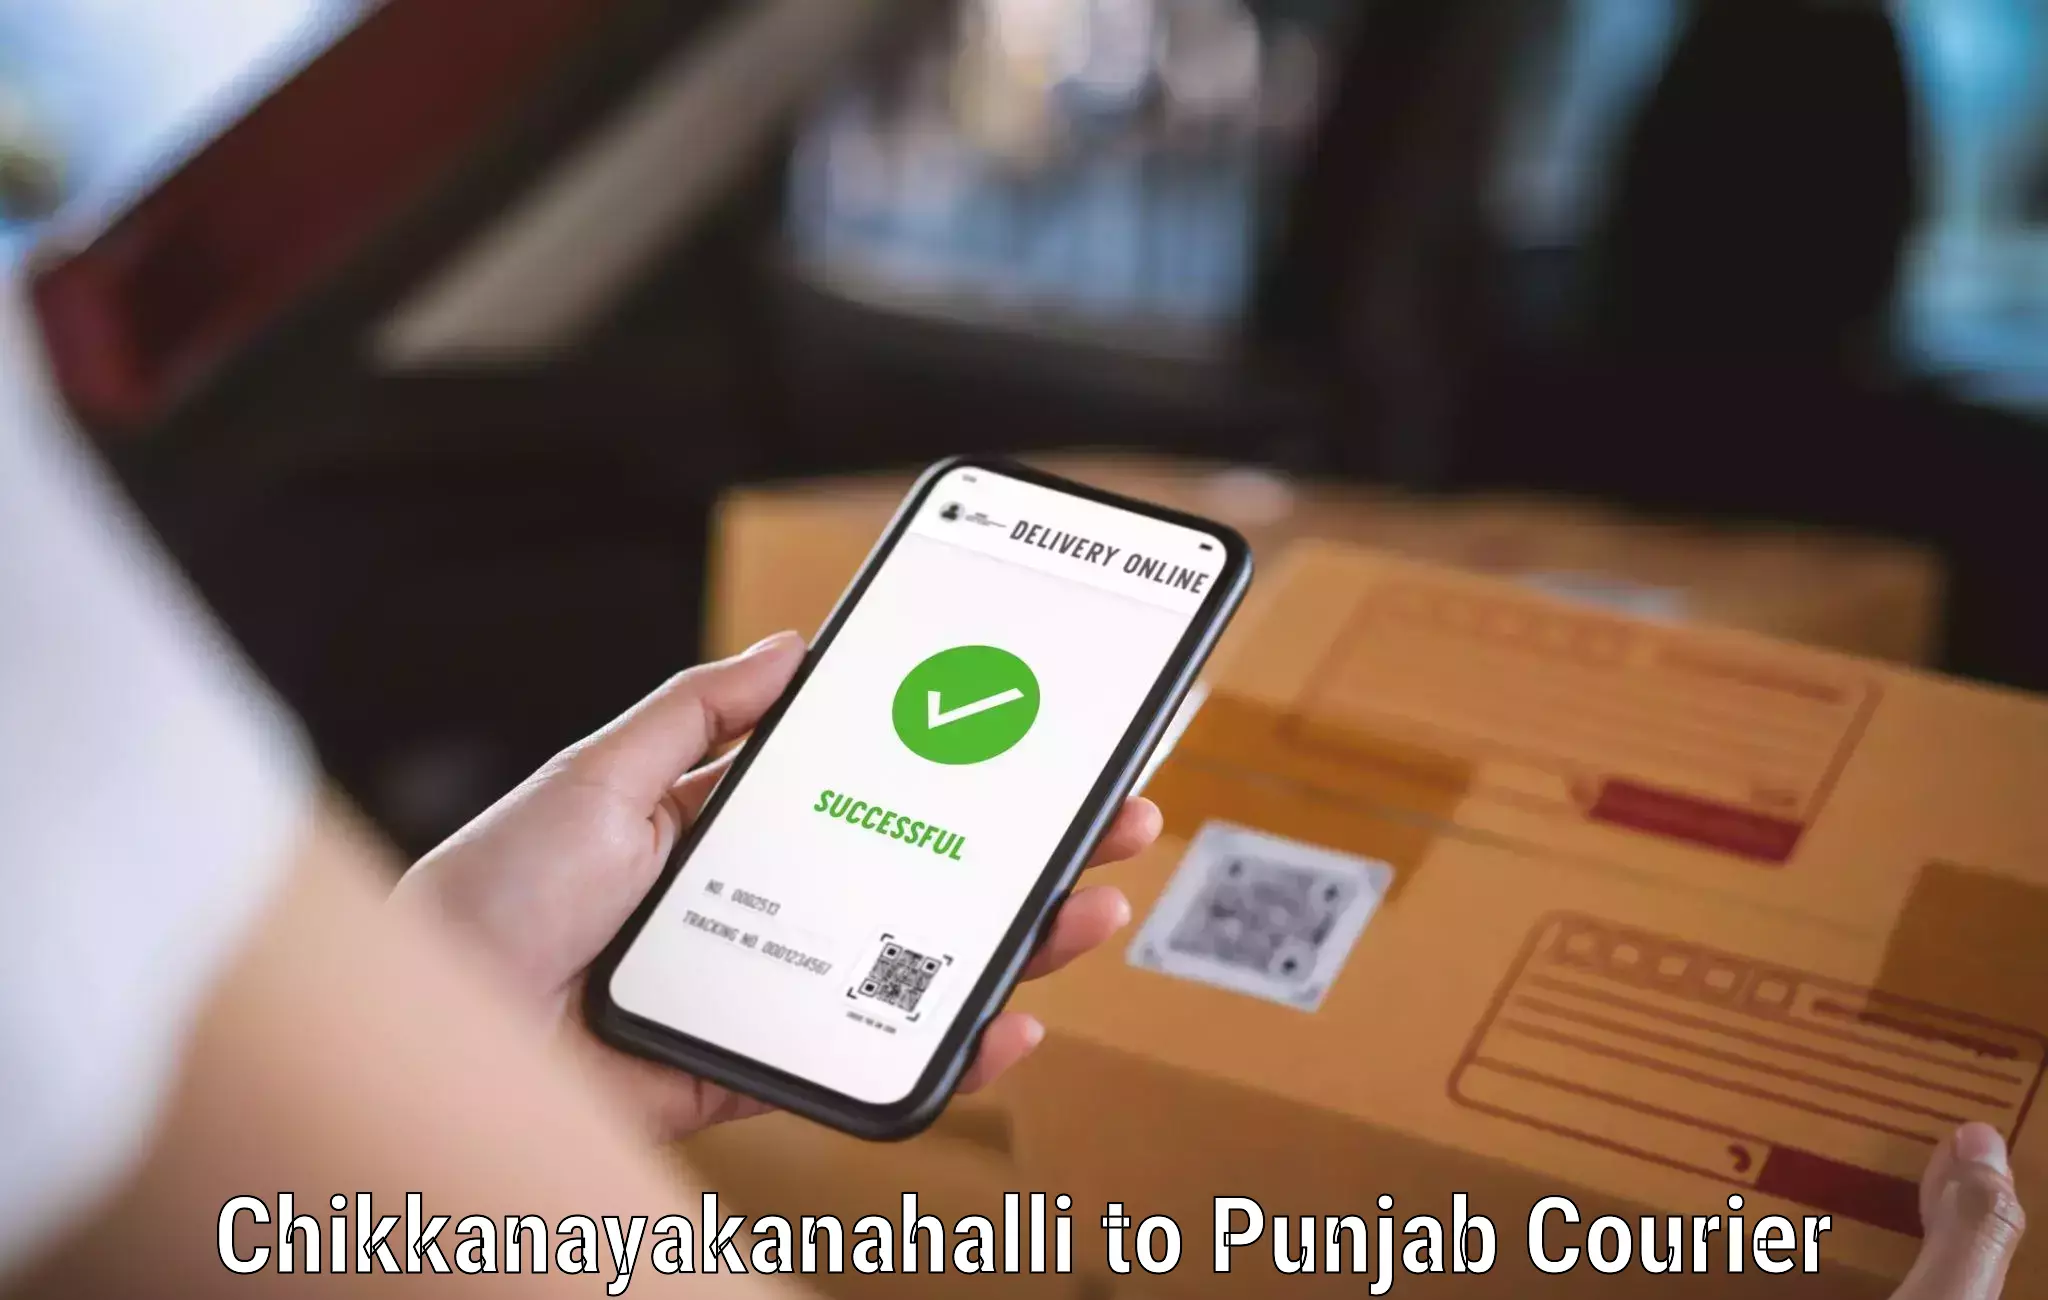 Corporate courier solutions Chikkanayakanahalli to Tarsikka